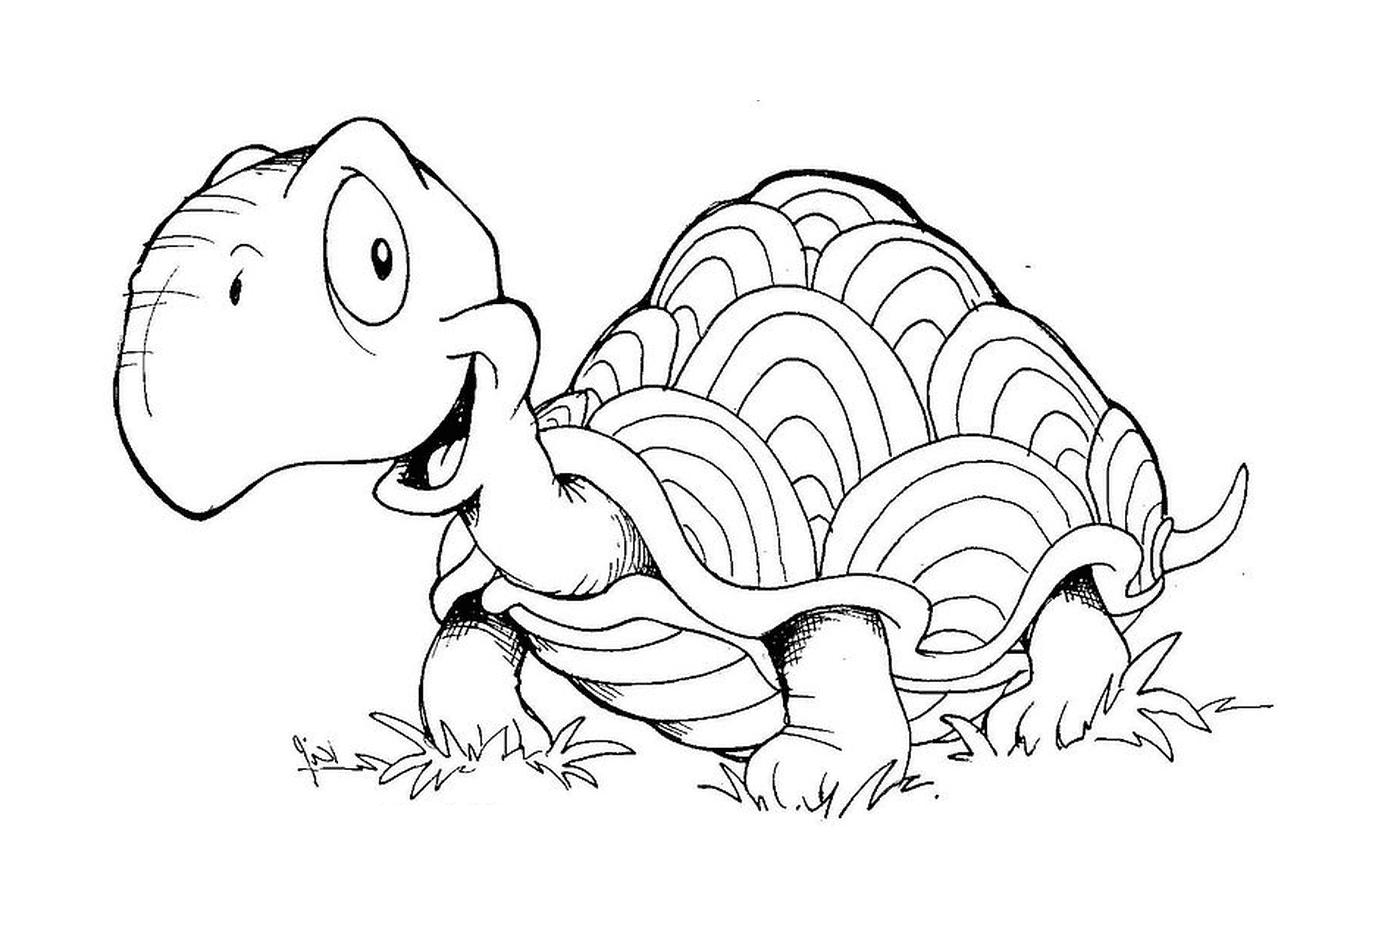  Una tortuga en la hierba 